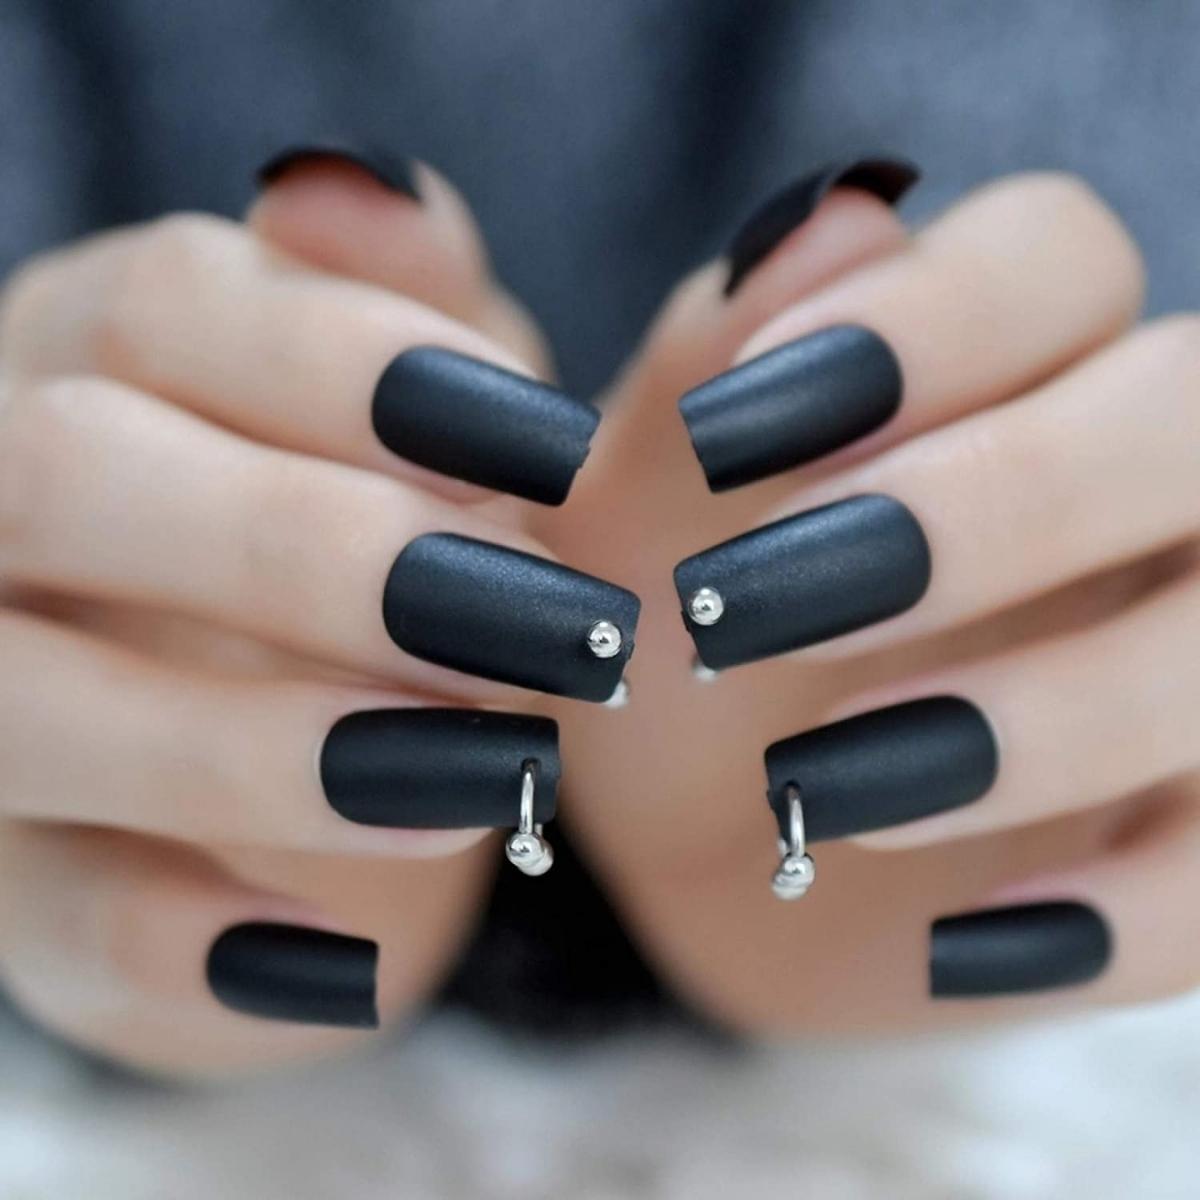 Những mẫu nail đen ĐỘC LẠ và ấn tượng cho cô nàng cá tính